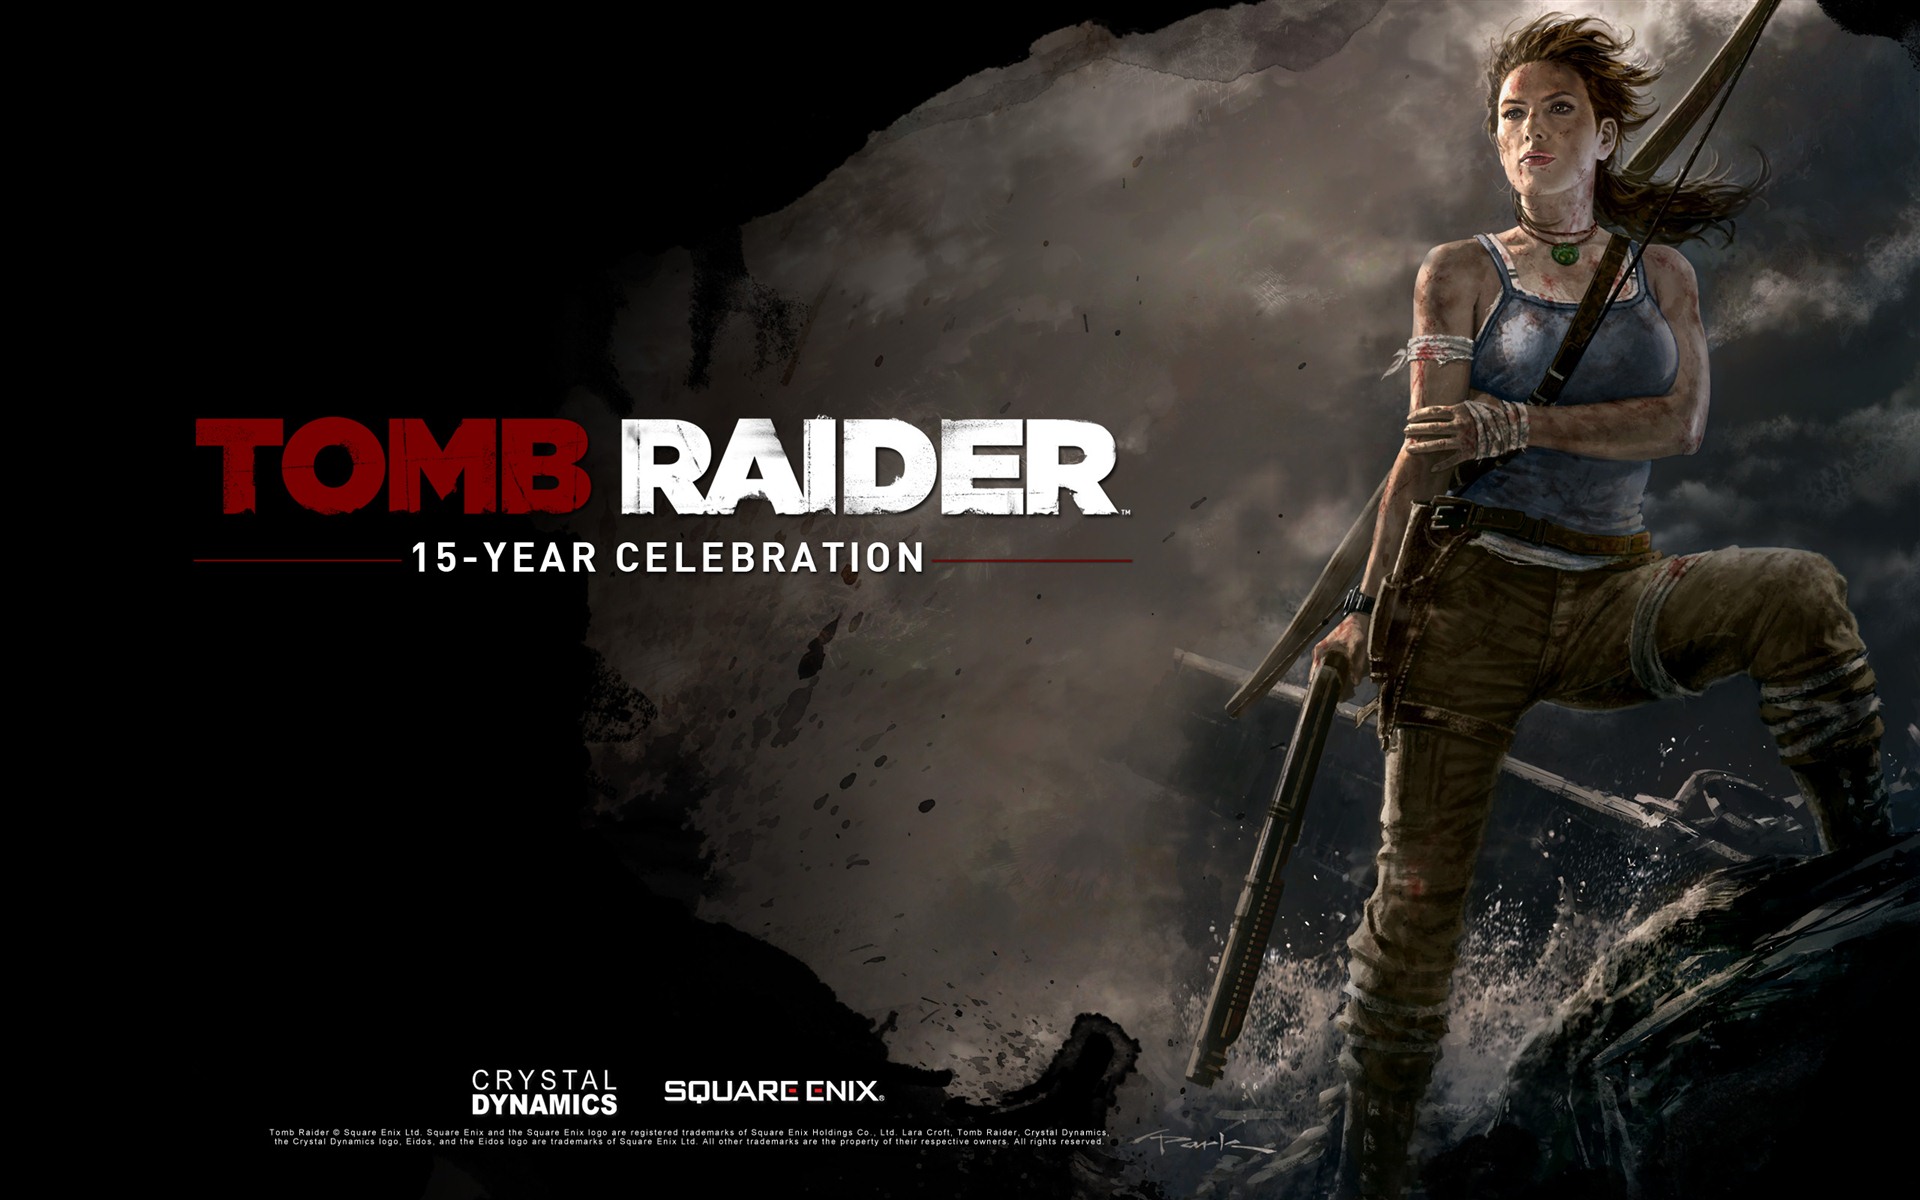 Tomb Raider 15-Year Celebration 古墓丽影15周年纪念版 高清壁纸1 - 1920x1200